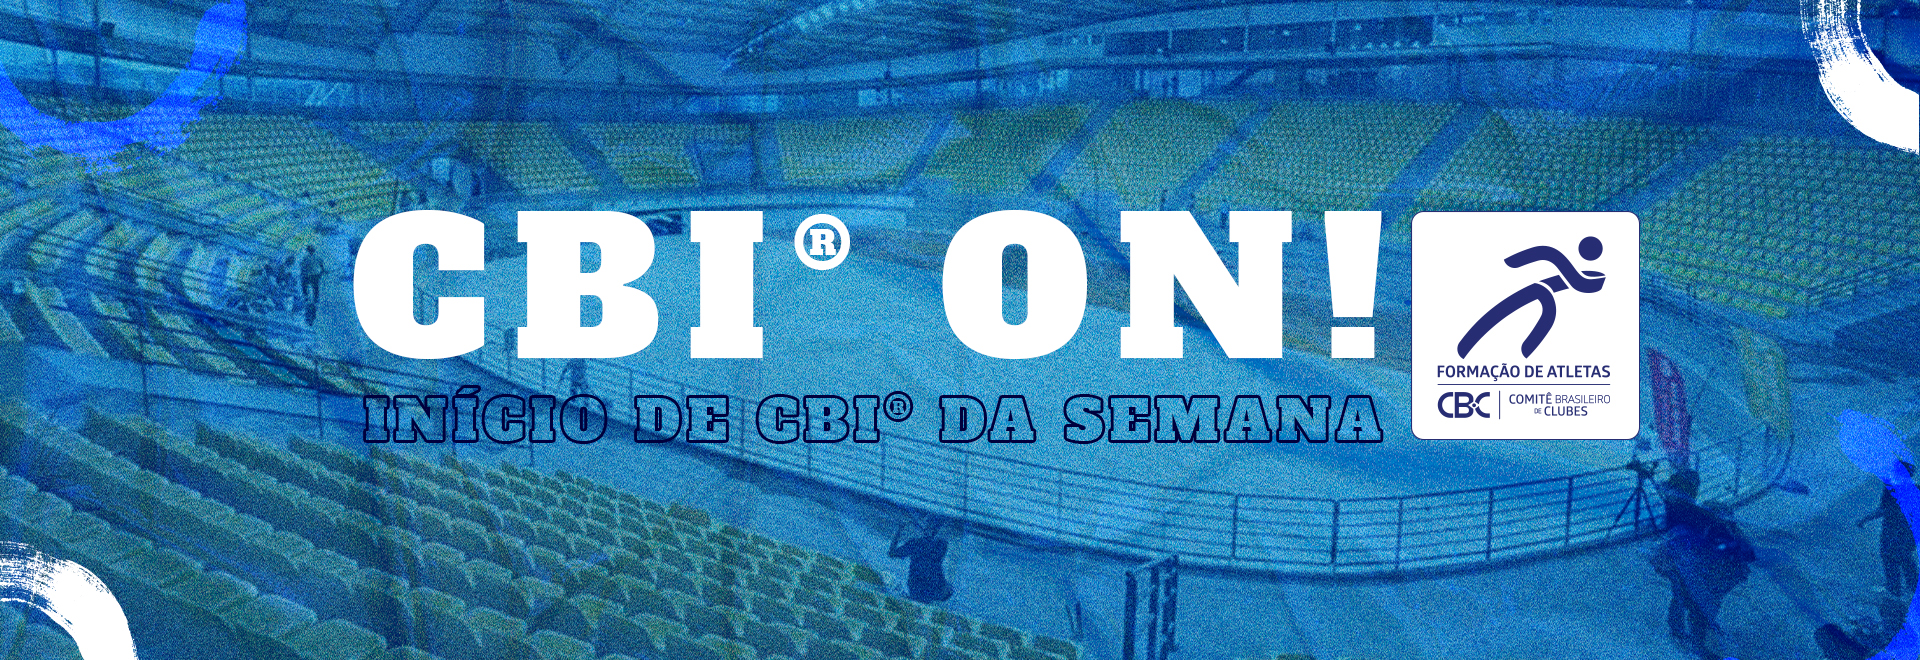 CBI ON: Saquarema/RJ recebe a 3ª etapa do CBI® Circuito Brasileiro de Vôlei de Praia 